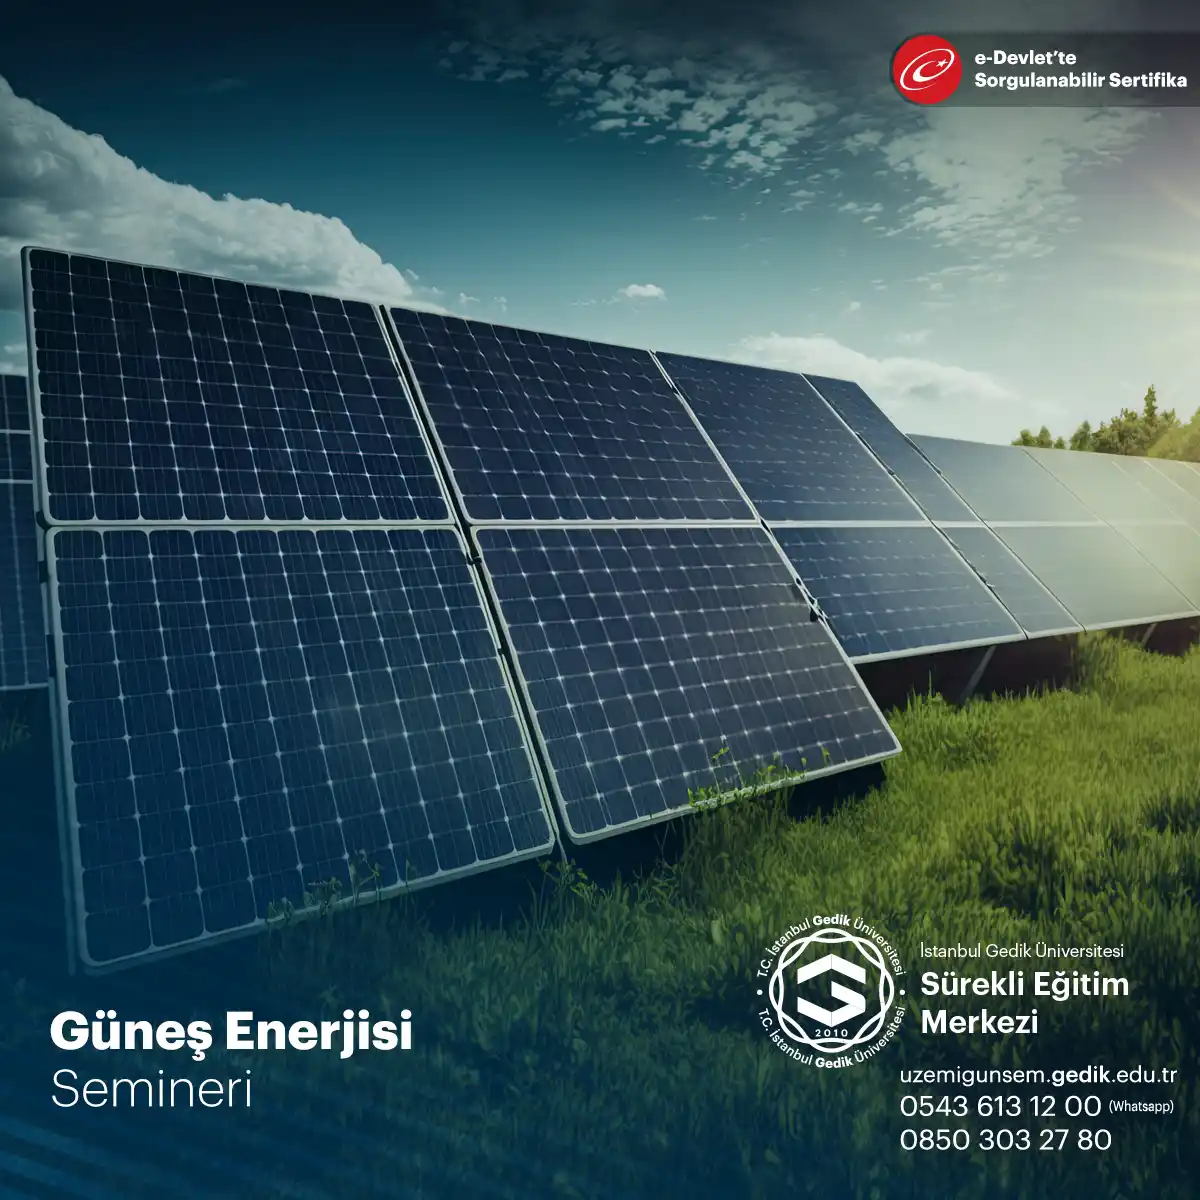 Seminer güneş enerjisinin temel prensipleri, güneş panellerinin yapısı ve çalışma prensipleri, güneş enerjisi sistemlerinin tasarımı ve kurulumu gibi konuları kapsar